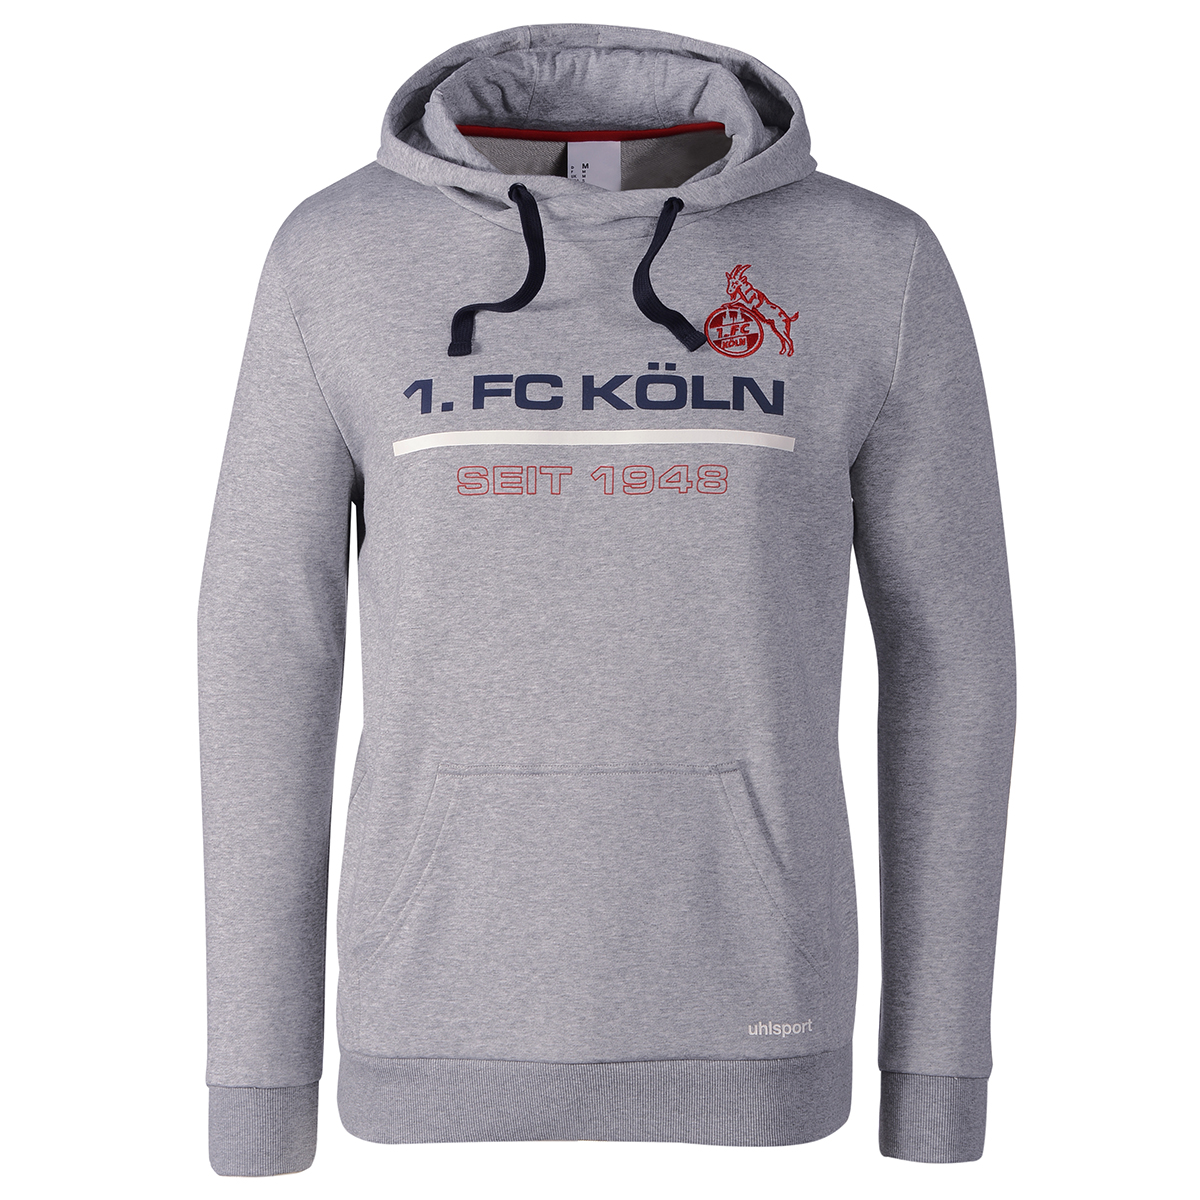 Uhlsport 1.FC Köln Sportswear Hoody 19/20 Herren grau